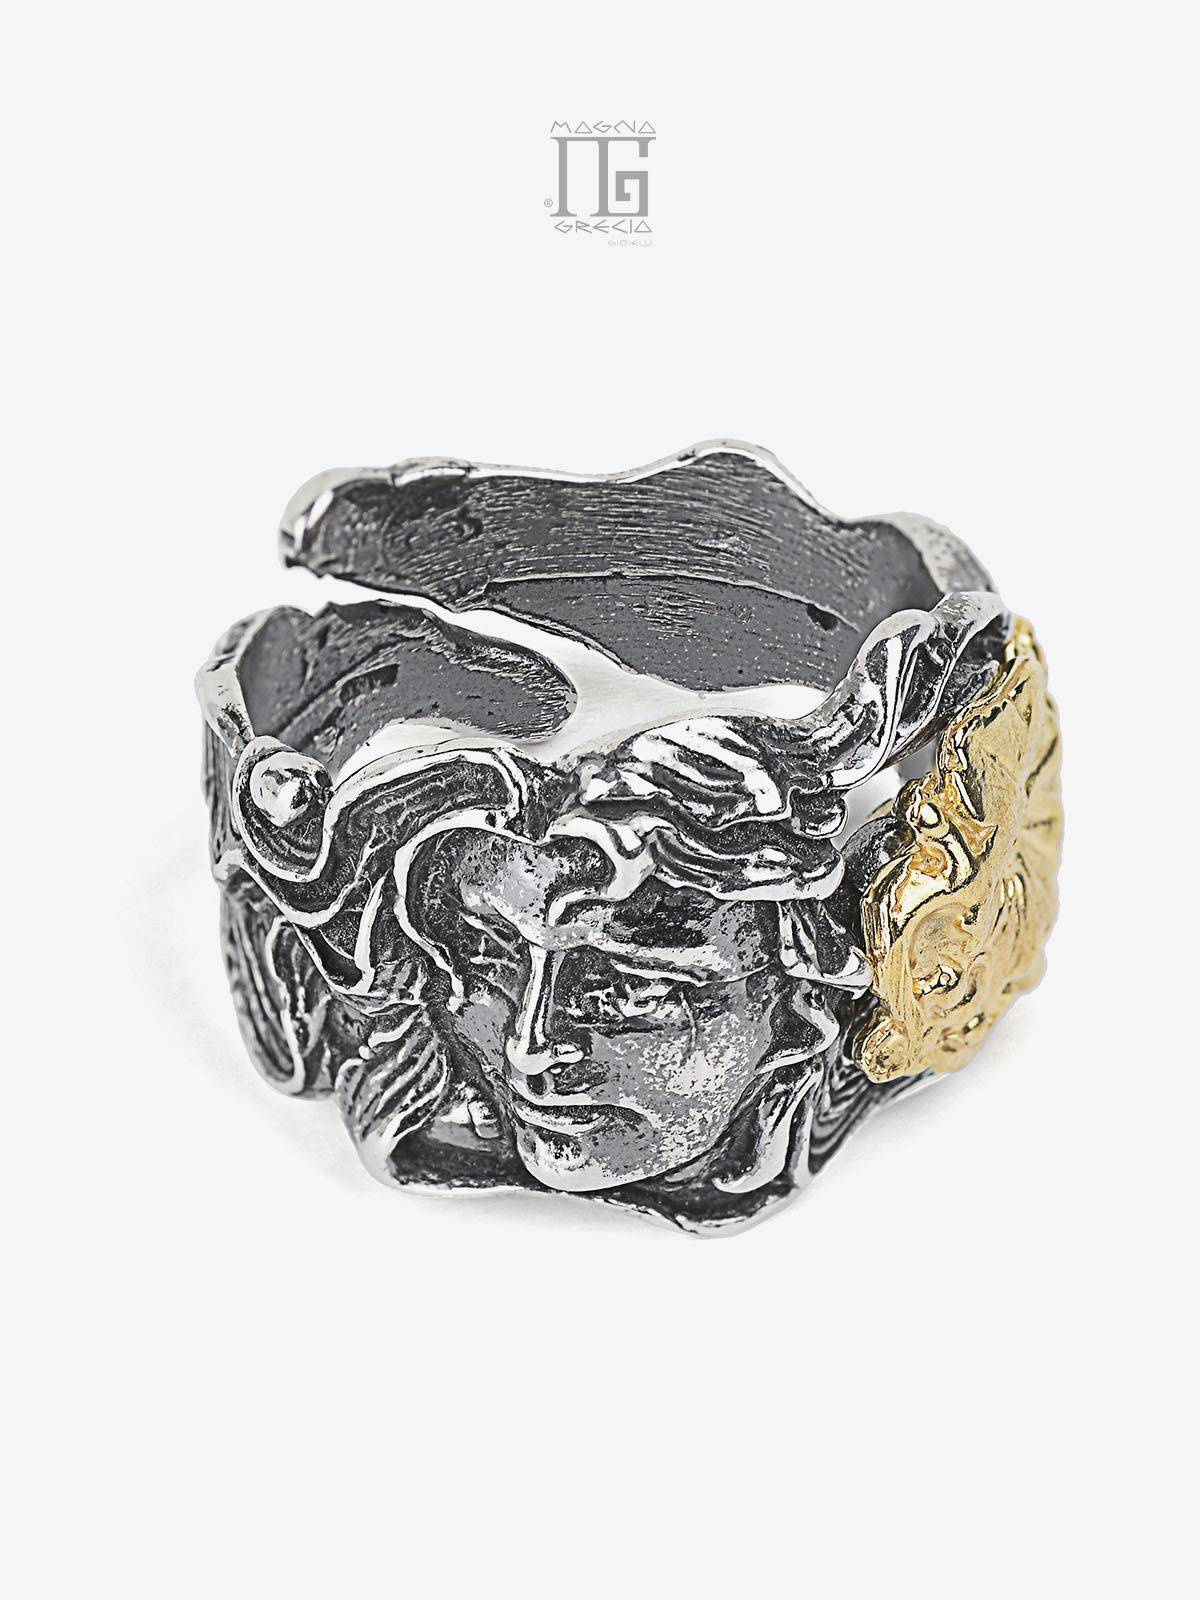 Anillo "Otoño" de plata con el rostro de la diosa Venus y un racimo de uvas representado bacalao MGK 3137 V.